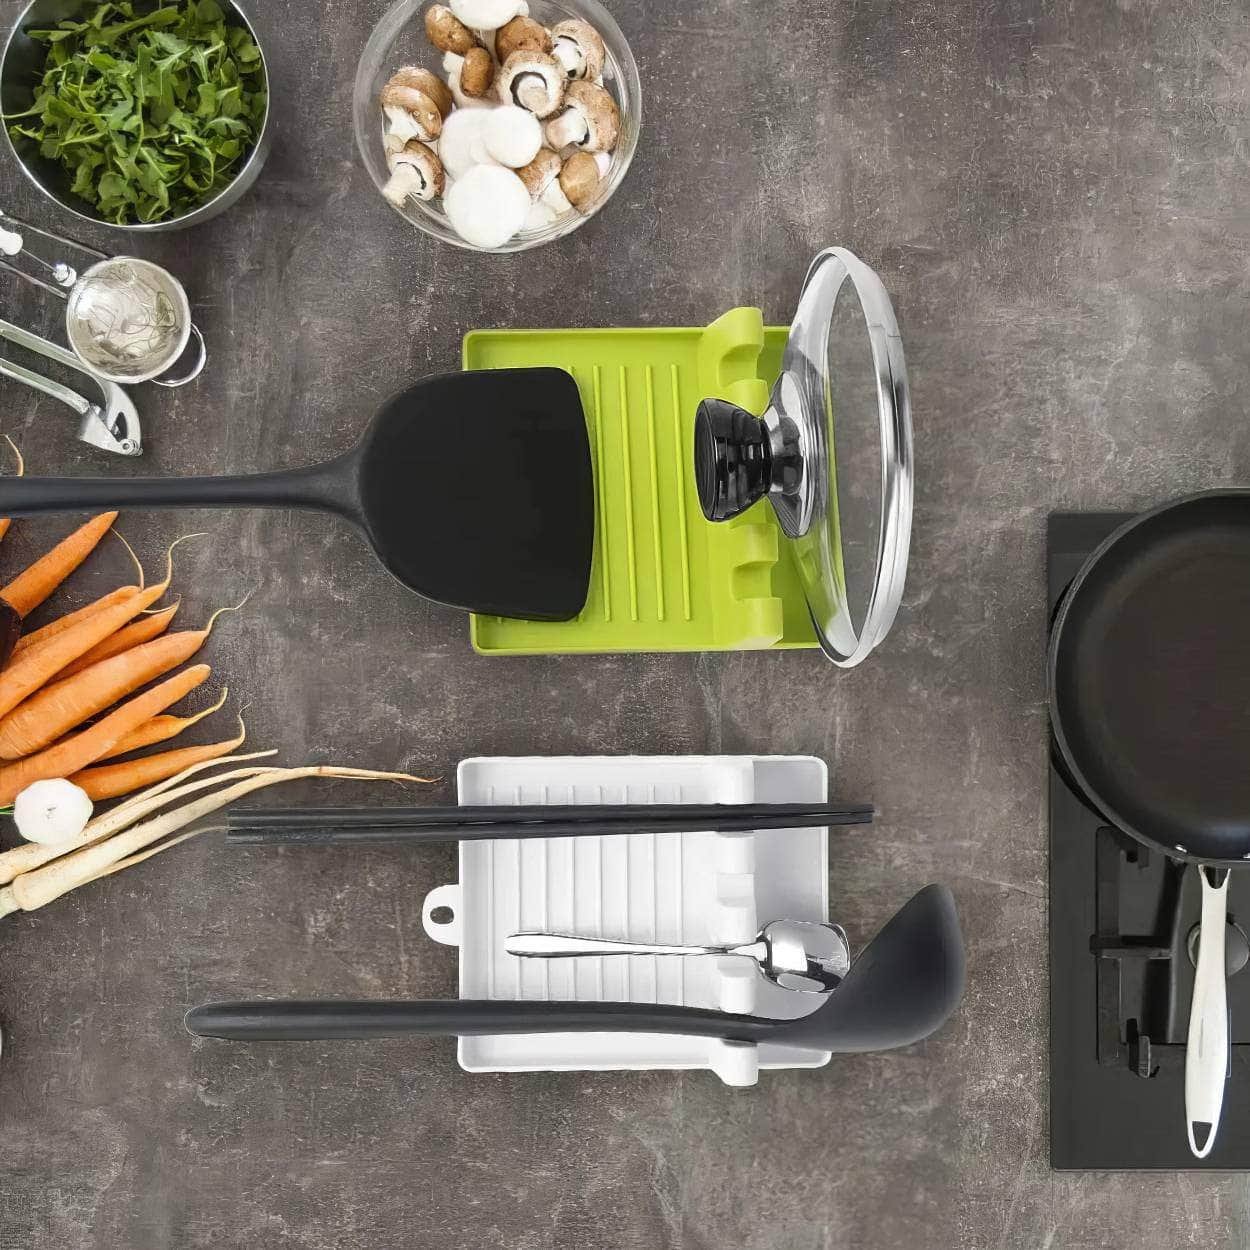 Kitchen Spoon Holders - Convenient Kitchen Accessories, Fork and Spatula Rack, Storage Organizer for Utensils, Kitchen Supplies